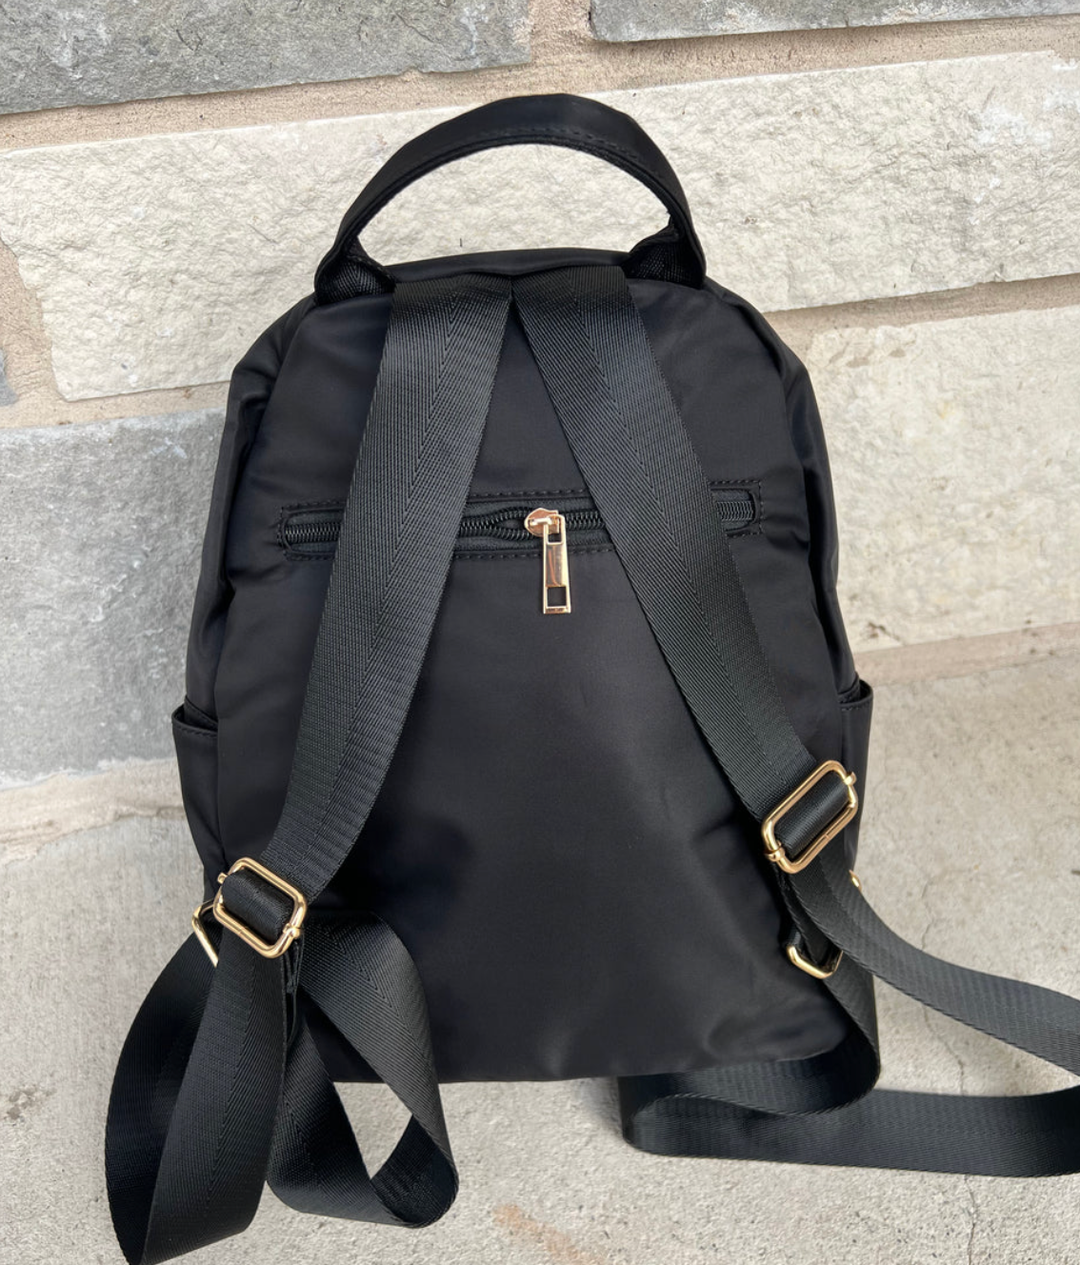 Savvy Mom Backpack in Black Nylon